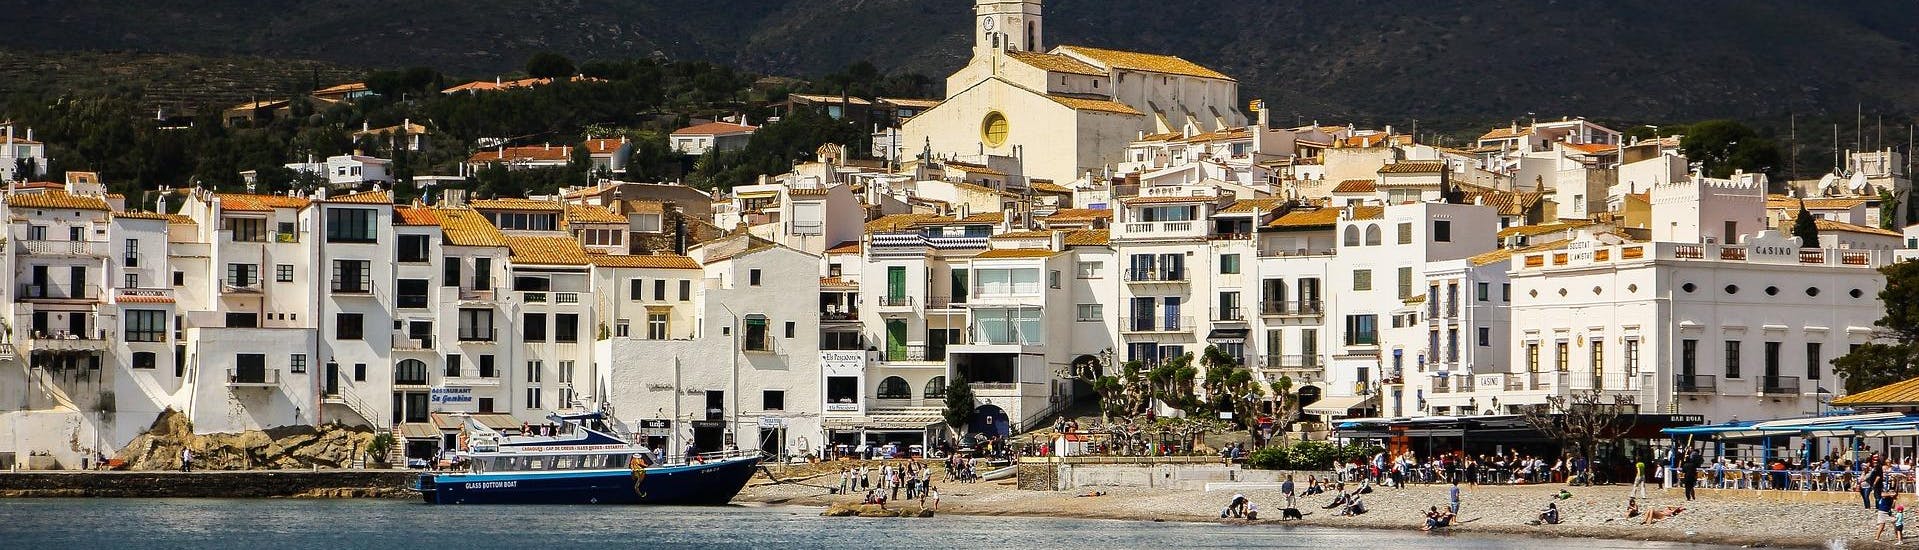 Uitzicht op de kust tijdens een boottocht naar Cadaqués.